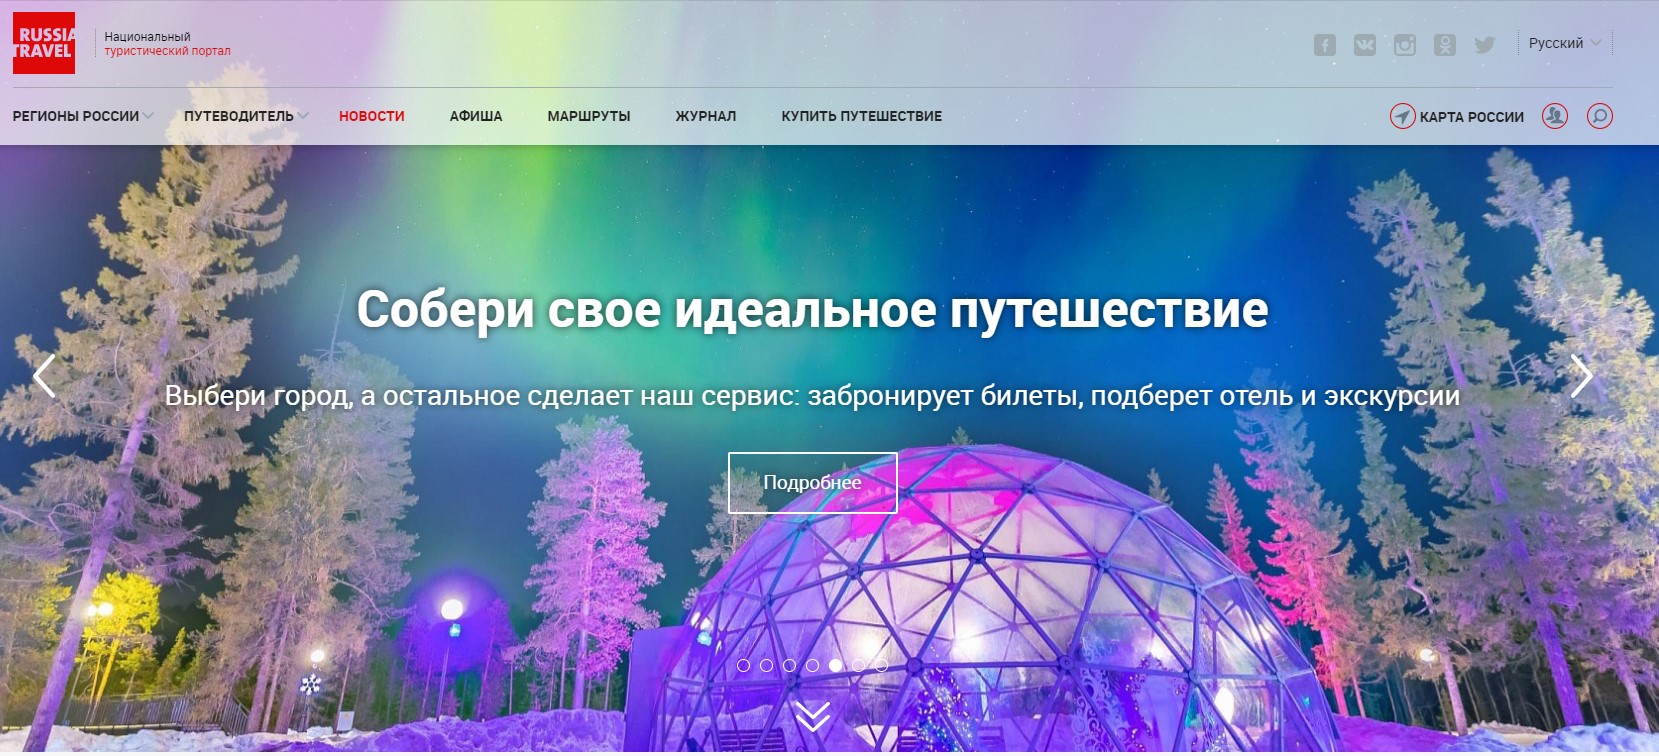 Ростуризм запустил тестовую версию обновленного национального портала Russia.travel